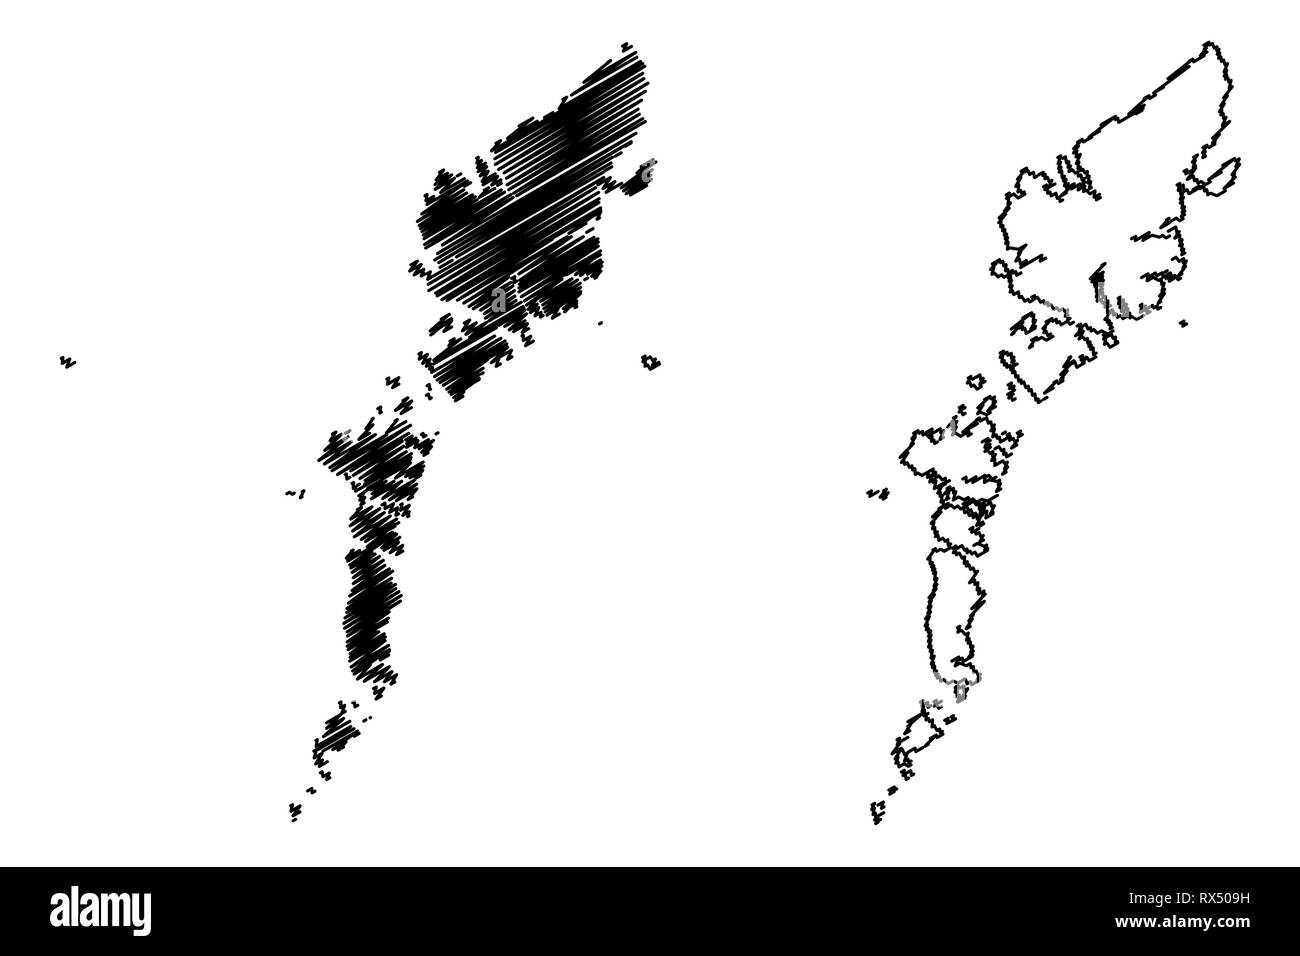 Comhairle Nan Eilean Siar (Vereinigtes Königreich, Schottland, lokale Regierung in Schottland) Karte Vektor-illustration, kritzeln Skizze Na h-eileanan Siar (Äußere Stock Vektor